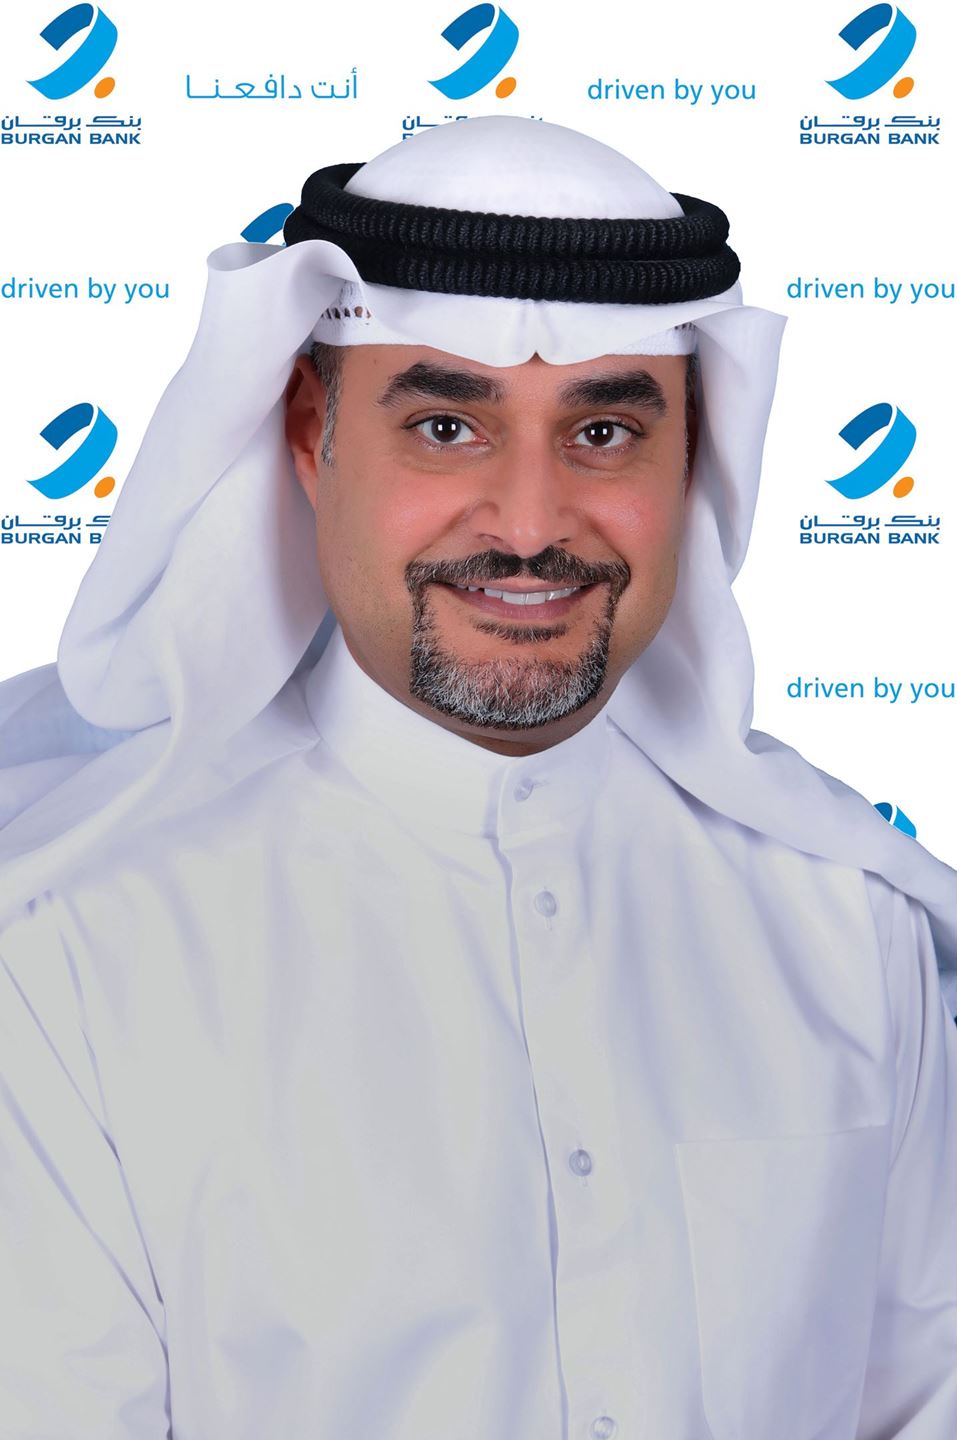 رائد عبد الله الهقهق، نائب رئيس الجهاز التنفيذي لمجموعة بنك برقان والرئيس التنفيذي الكويت